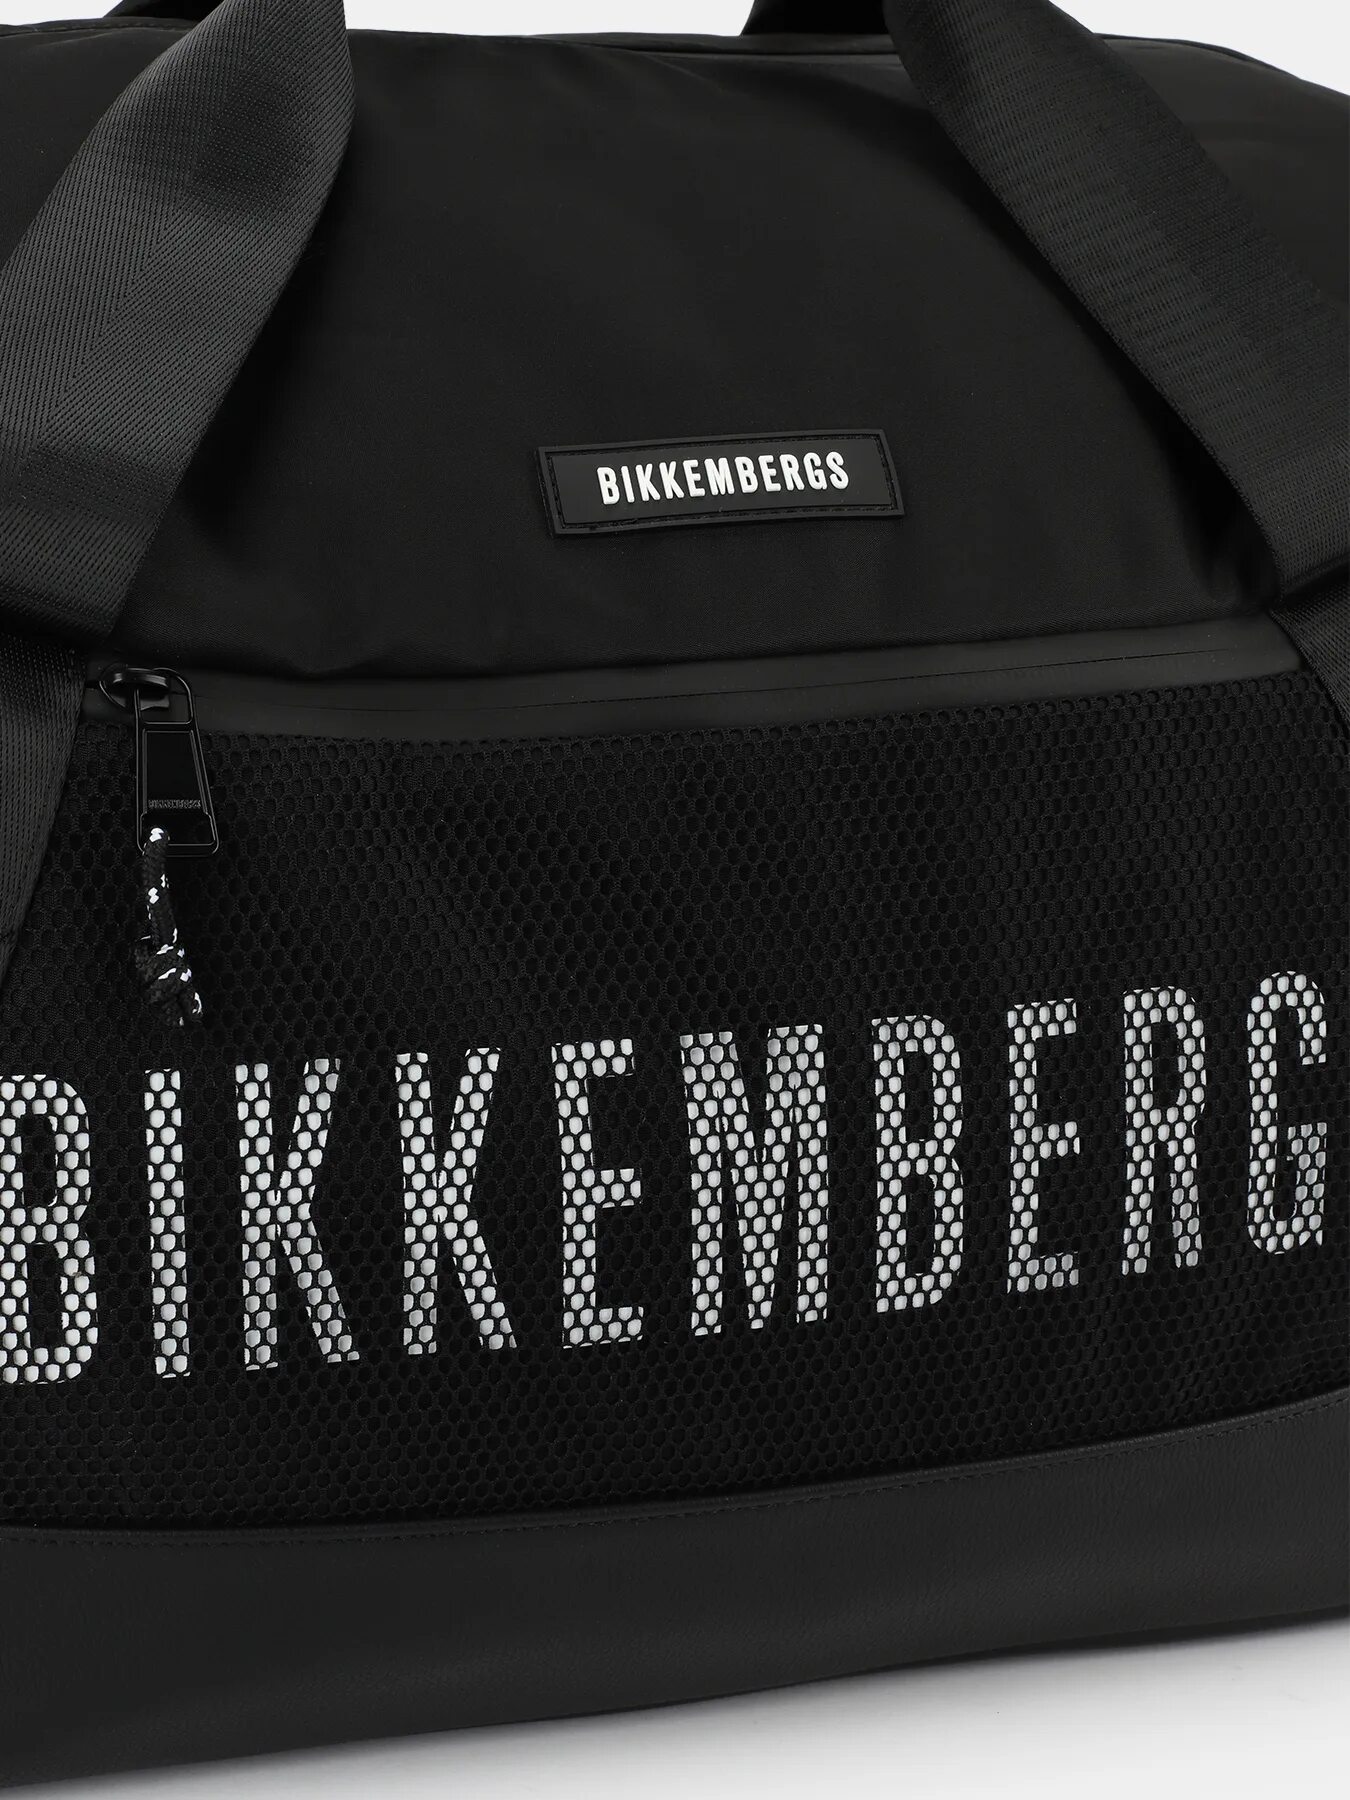 Спортивная сумка Биккембергс. Сумка Bikkembergs 9860. Сумка Биккембергс мужская. Биккембергс поясная сумка мужская.